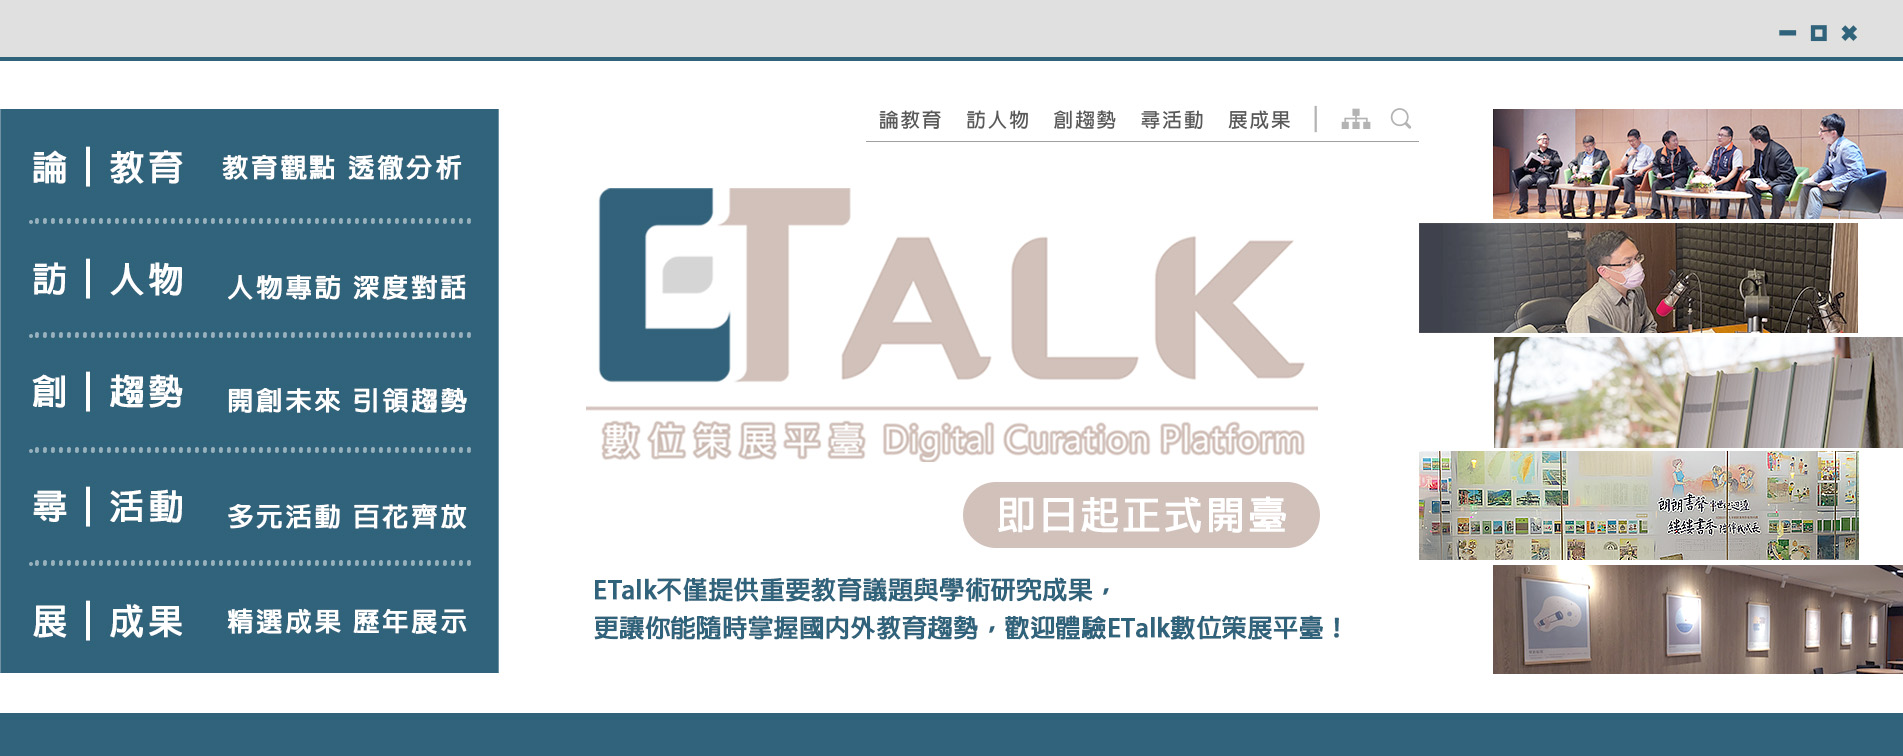 【開臺公告】本院【E Talk數位策展平臺】自即日起正式開臺，歡迎上網點閱觀看!